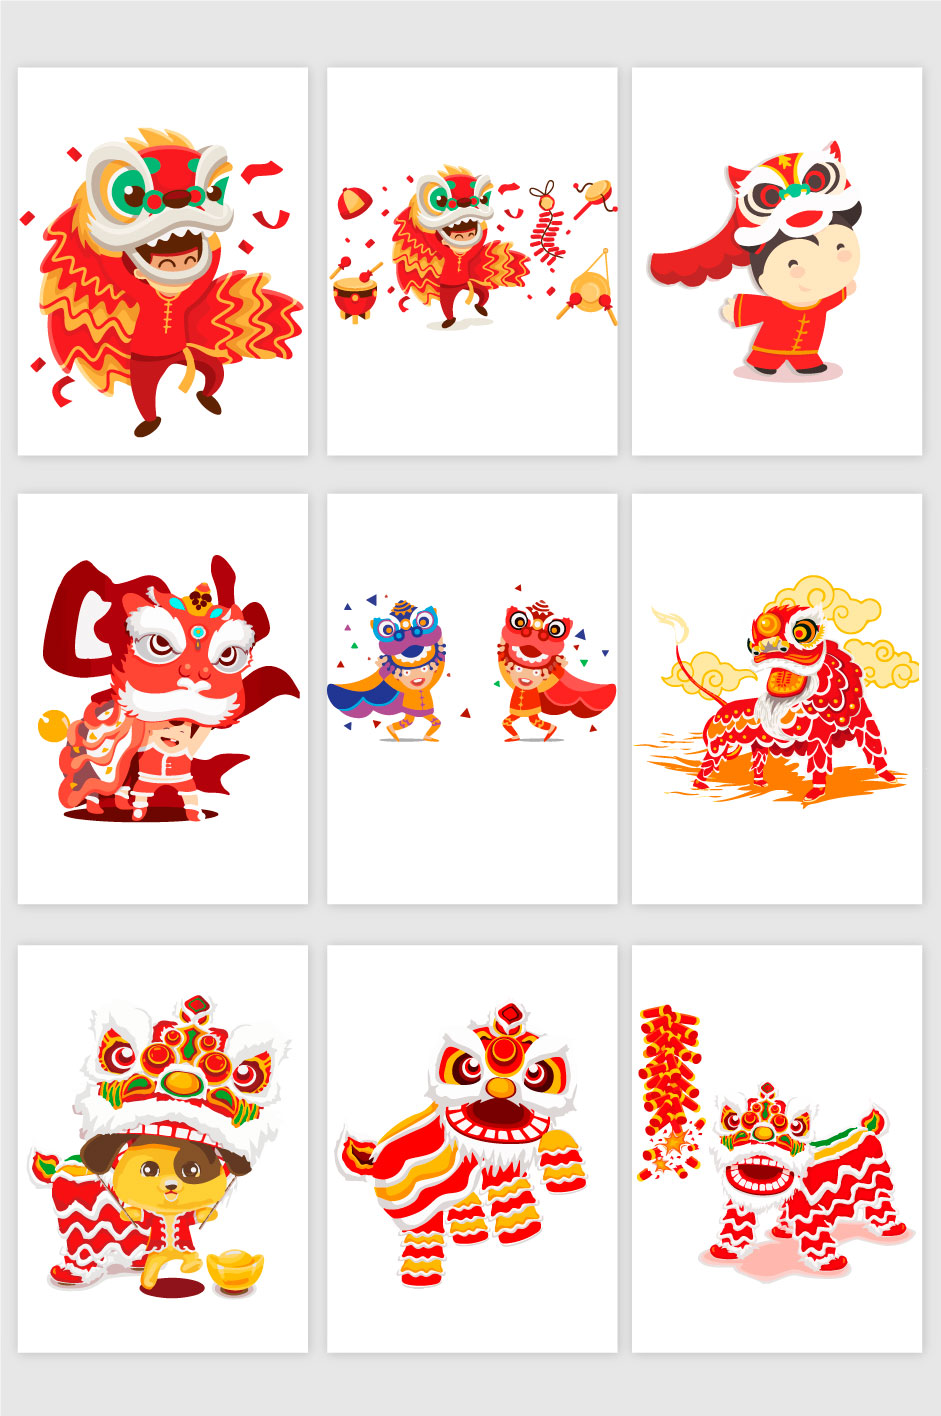 中国式龙和舞狮图形AI矢量